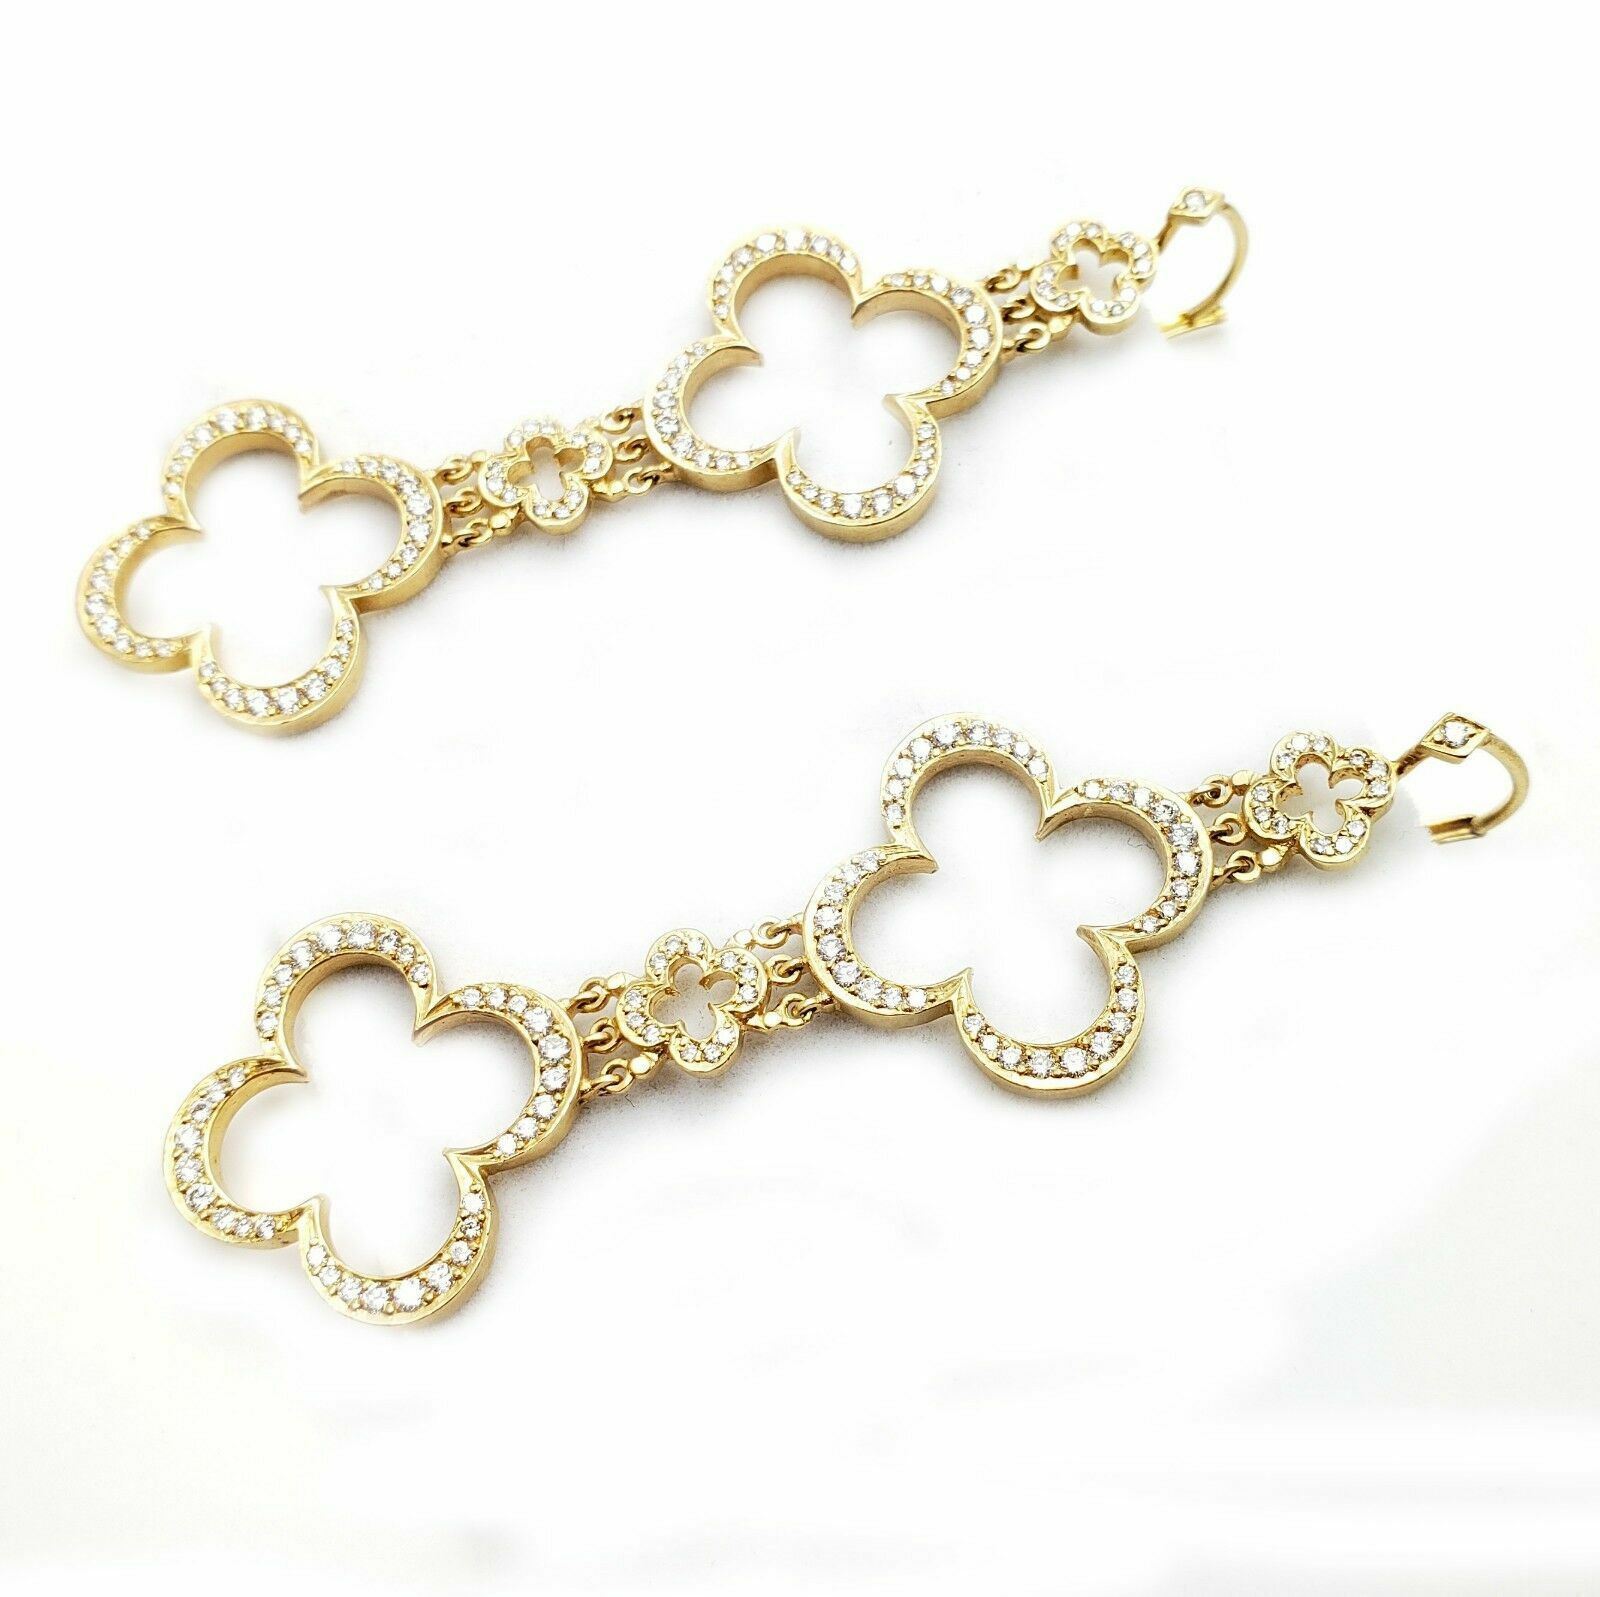 Loree Rodkin Jewelry & Watches:Vintage & Antique Jewelry:Earrings Ultra Rare Large Loree Rodkin 18k Yellow Gold 3ctw Diamond Cross Earrings